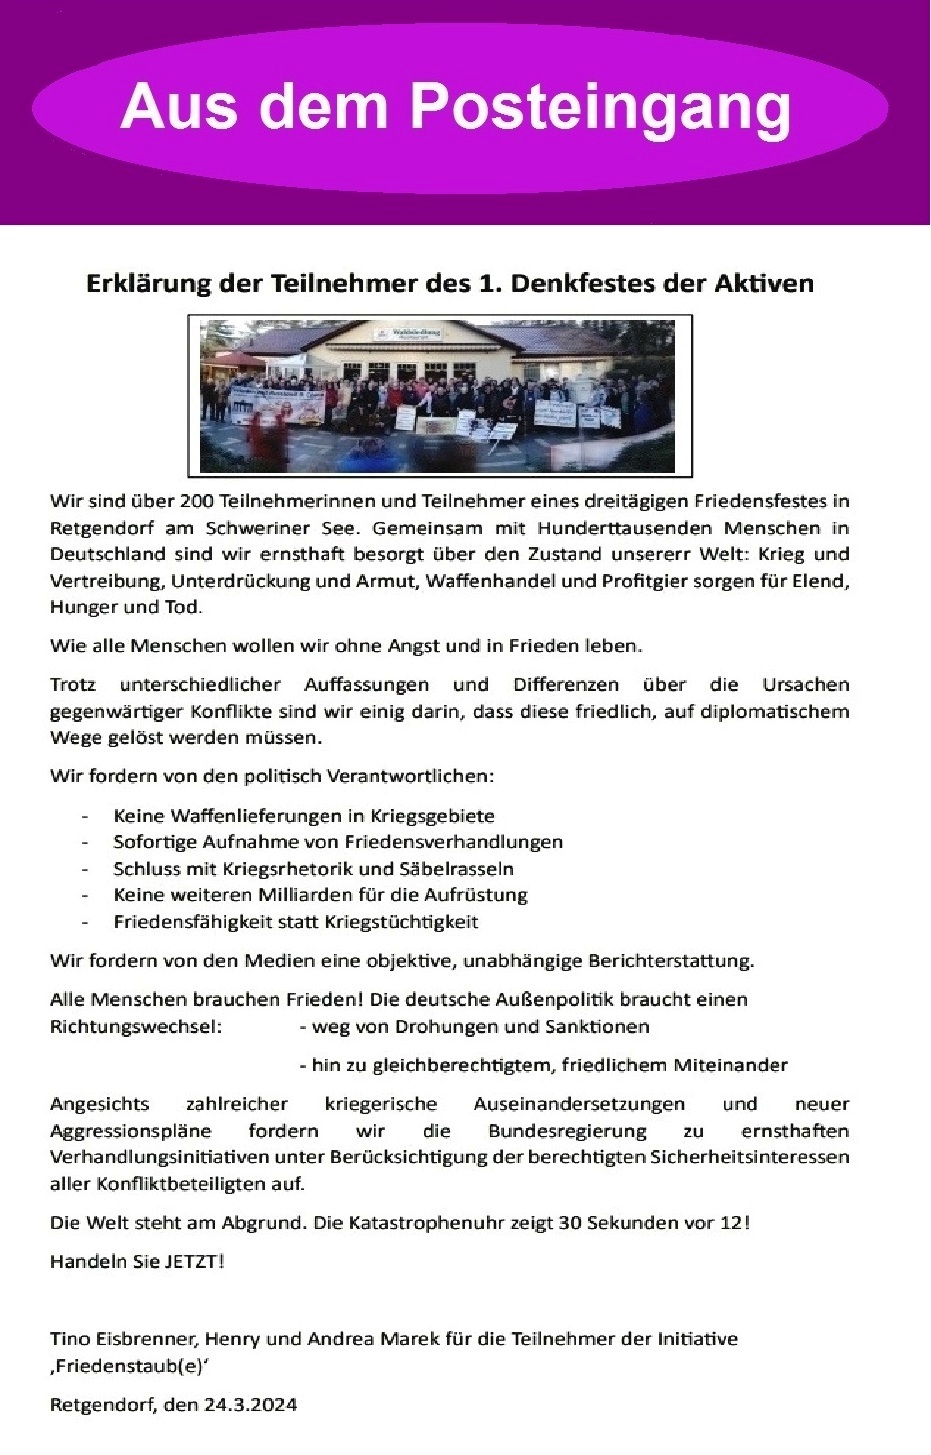 1. Denkfest in Retgendorf - Erklrung der Teilnehmer des 1. Denkfestes der Aktiven - Erklrung vom 24.03.2024 - Aus dem Posteingang von Dr. Marianne Linke vom 24.03.2024